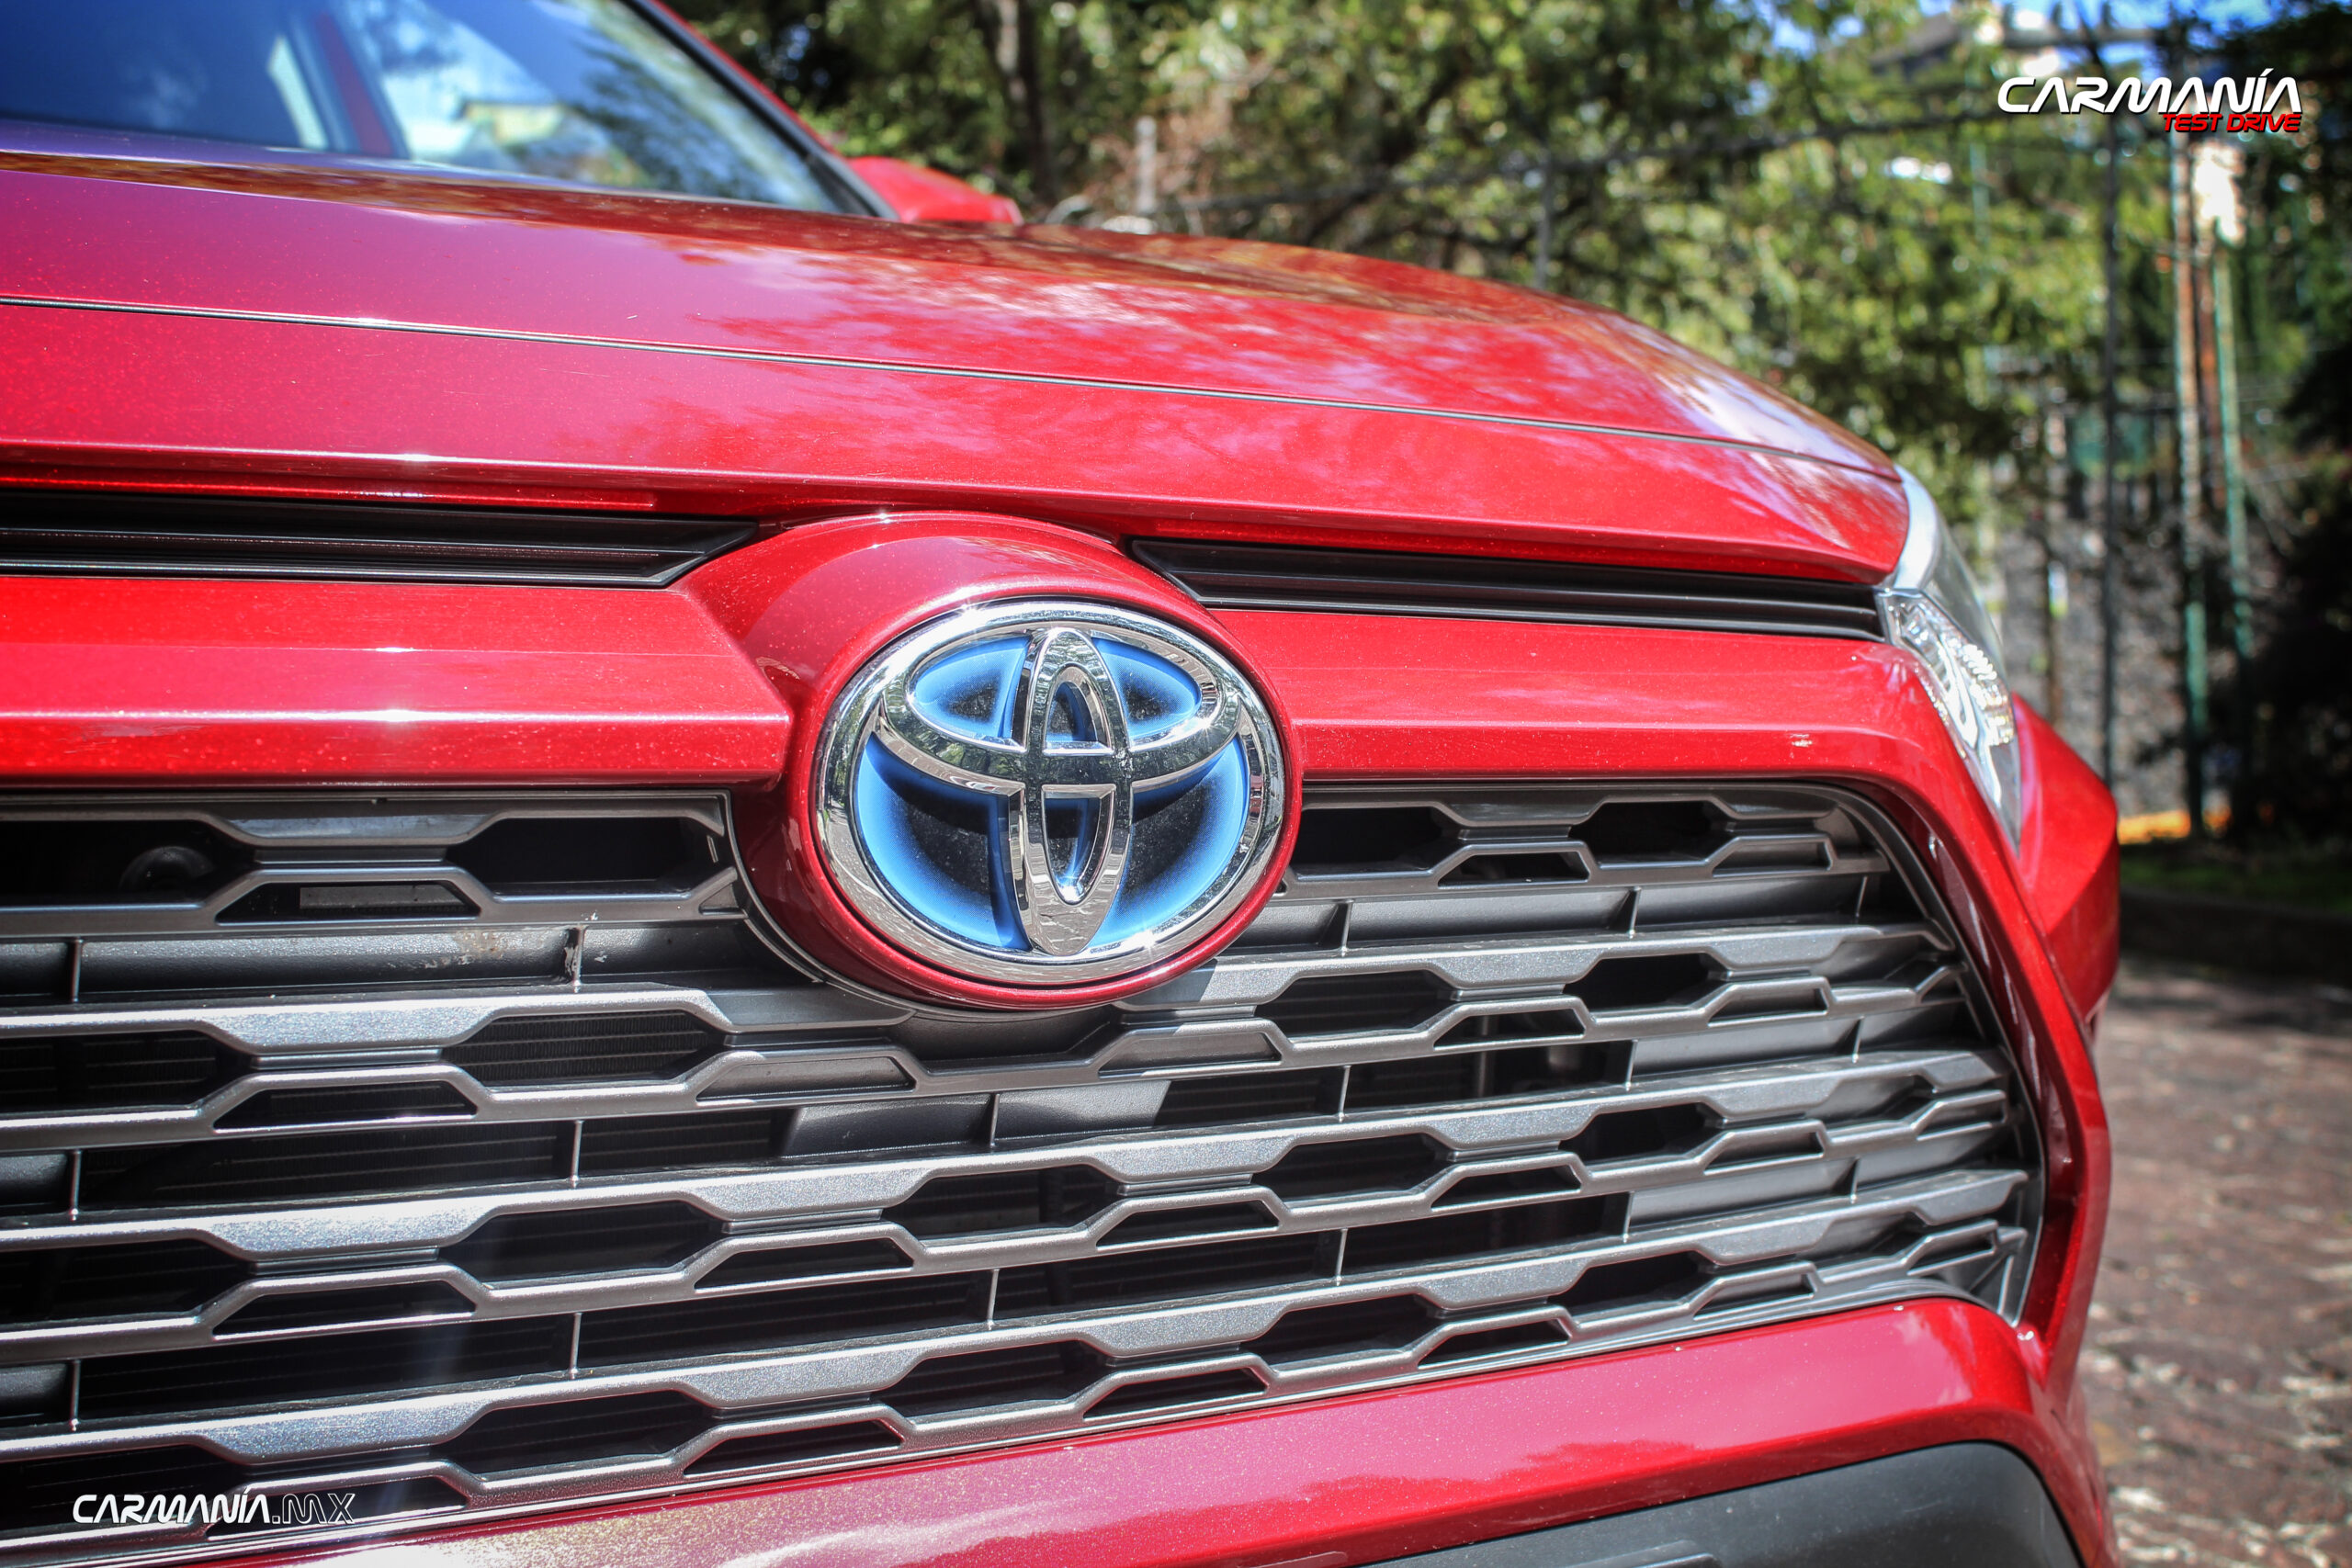 RAV4 y Prius de Toyota son reconocidos por su calidad y confiabilidad, según J.D. Power